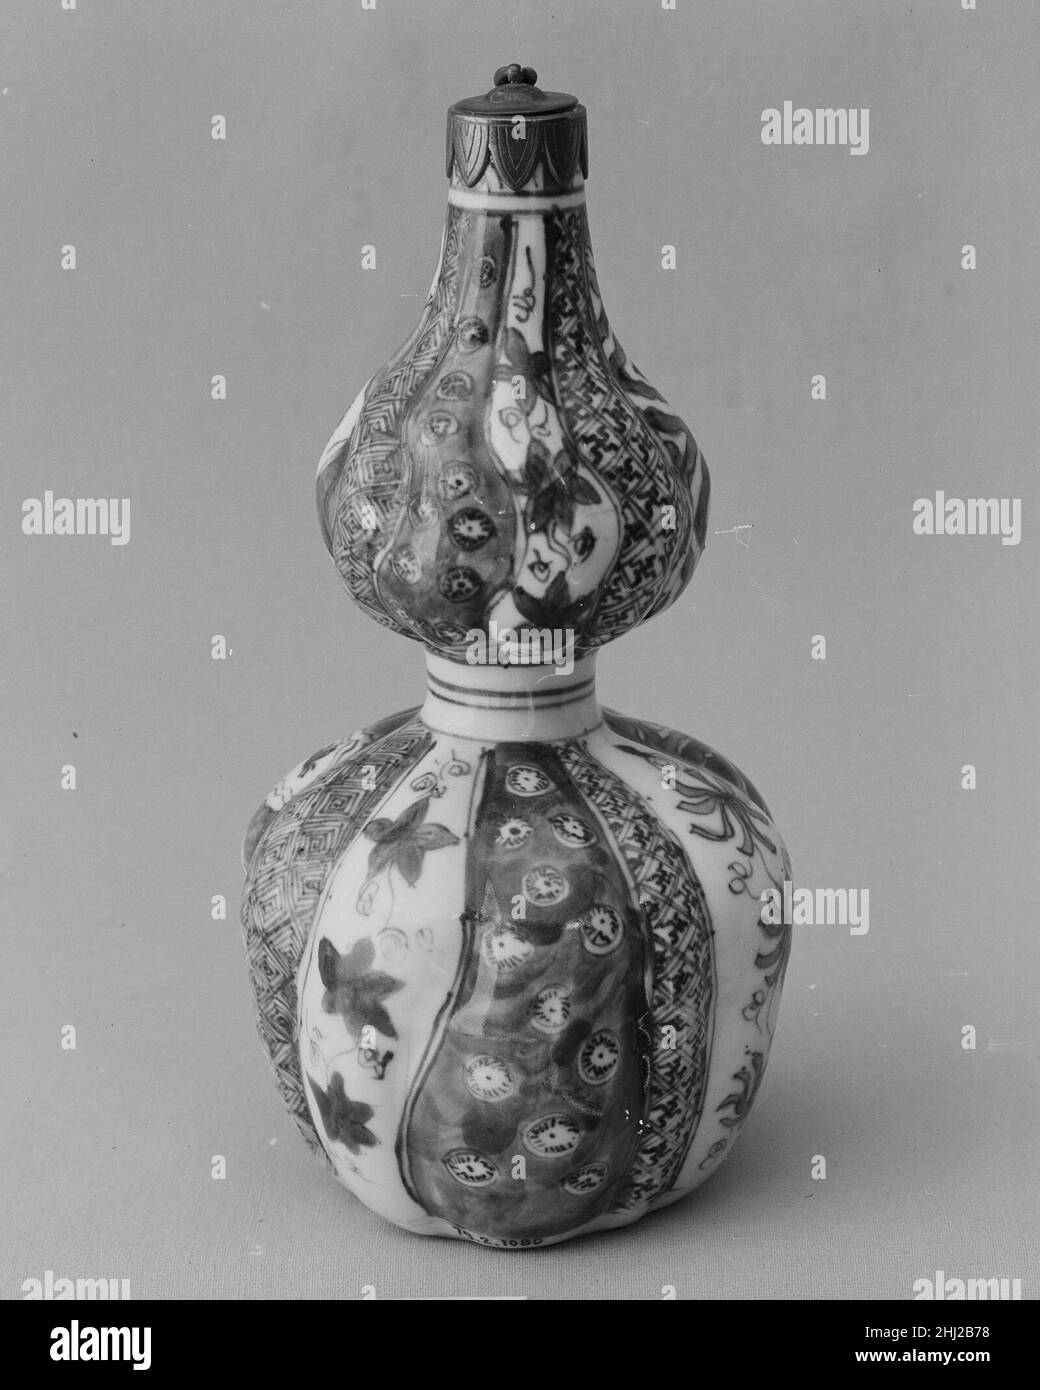 Flasche 17th Jahrhundert China die verdrehte Form der vertikalen Lappen, die diese Flasche definieren, und die Dichte der Dekoration, deuten darauf hin, dass es für den japanischen Markt gemacht wurde. Die Inschrift auf dem unteren Teil des Schiffes ist ein Paean zur Sorgfalt und zur Bedeutung der Gelehrsamkeit am Hof. Flasche 50026 Stockfoto